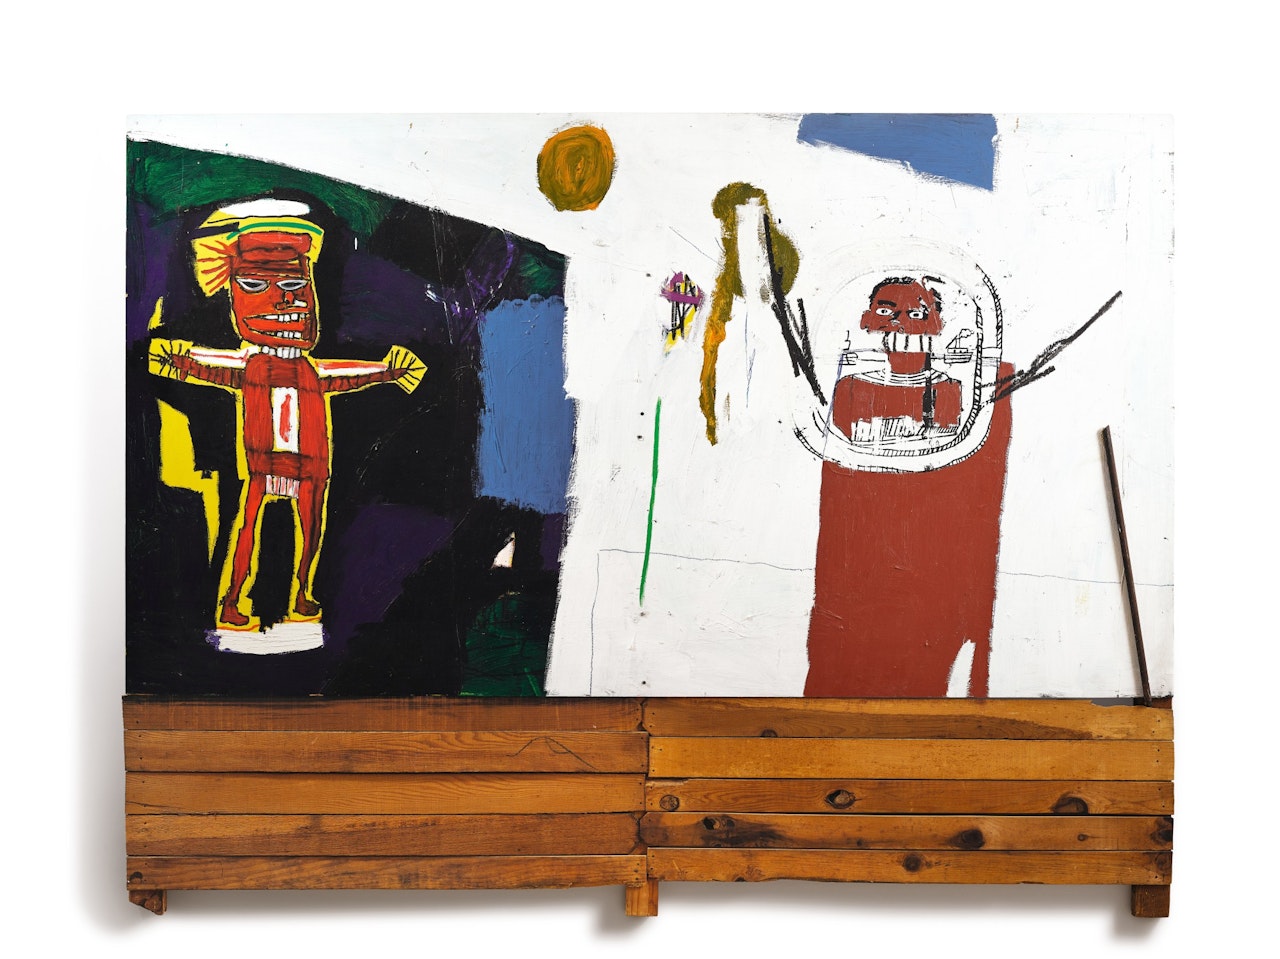 Water-Worshipper by Jean-Michel Basquiat